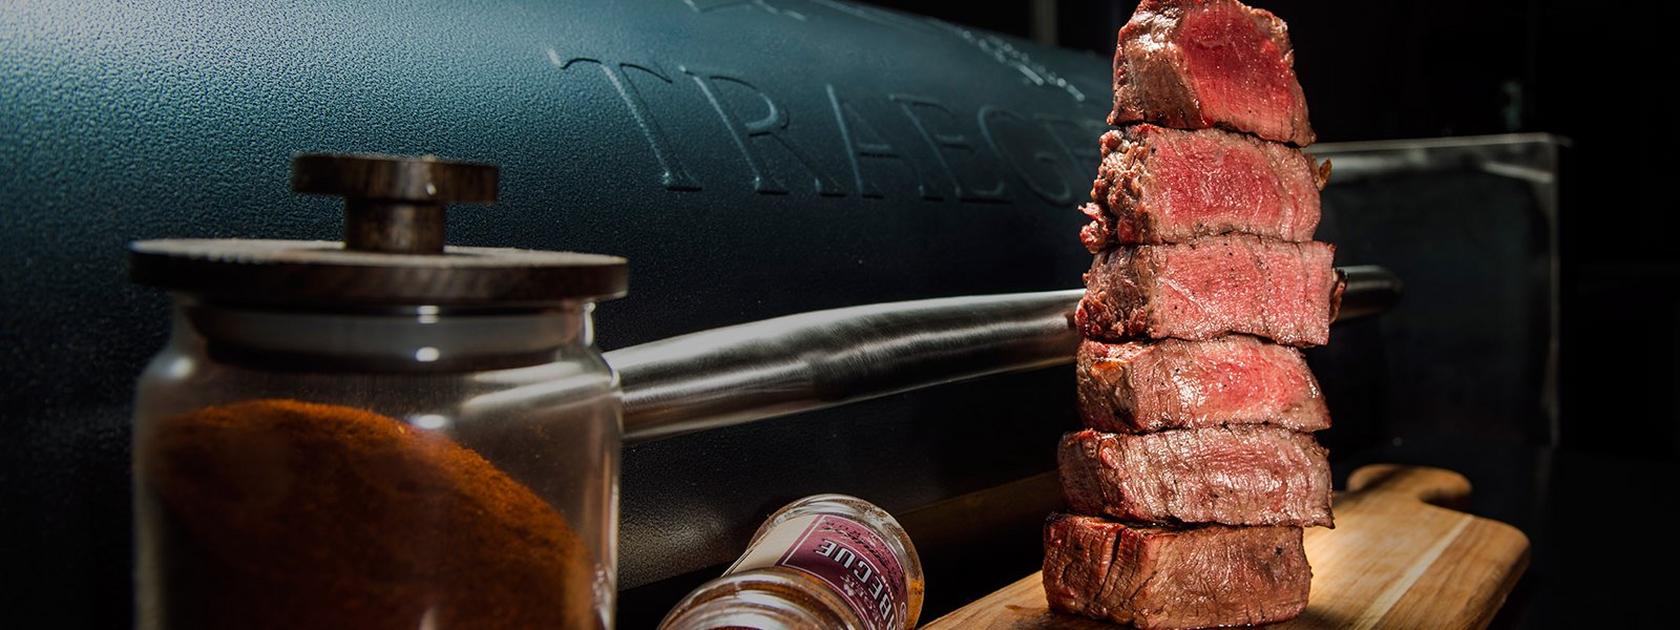 Steak Temperature Guide: Achieving Perfect Medium Rare Steak & More